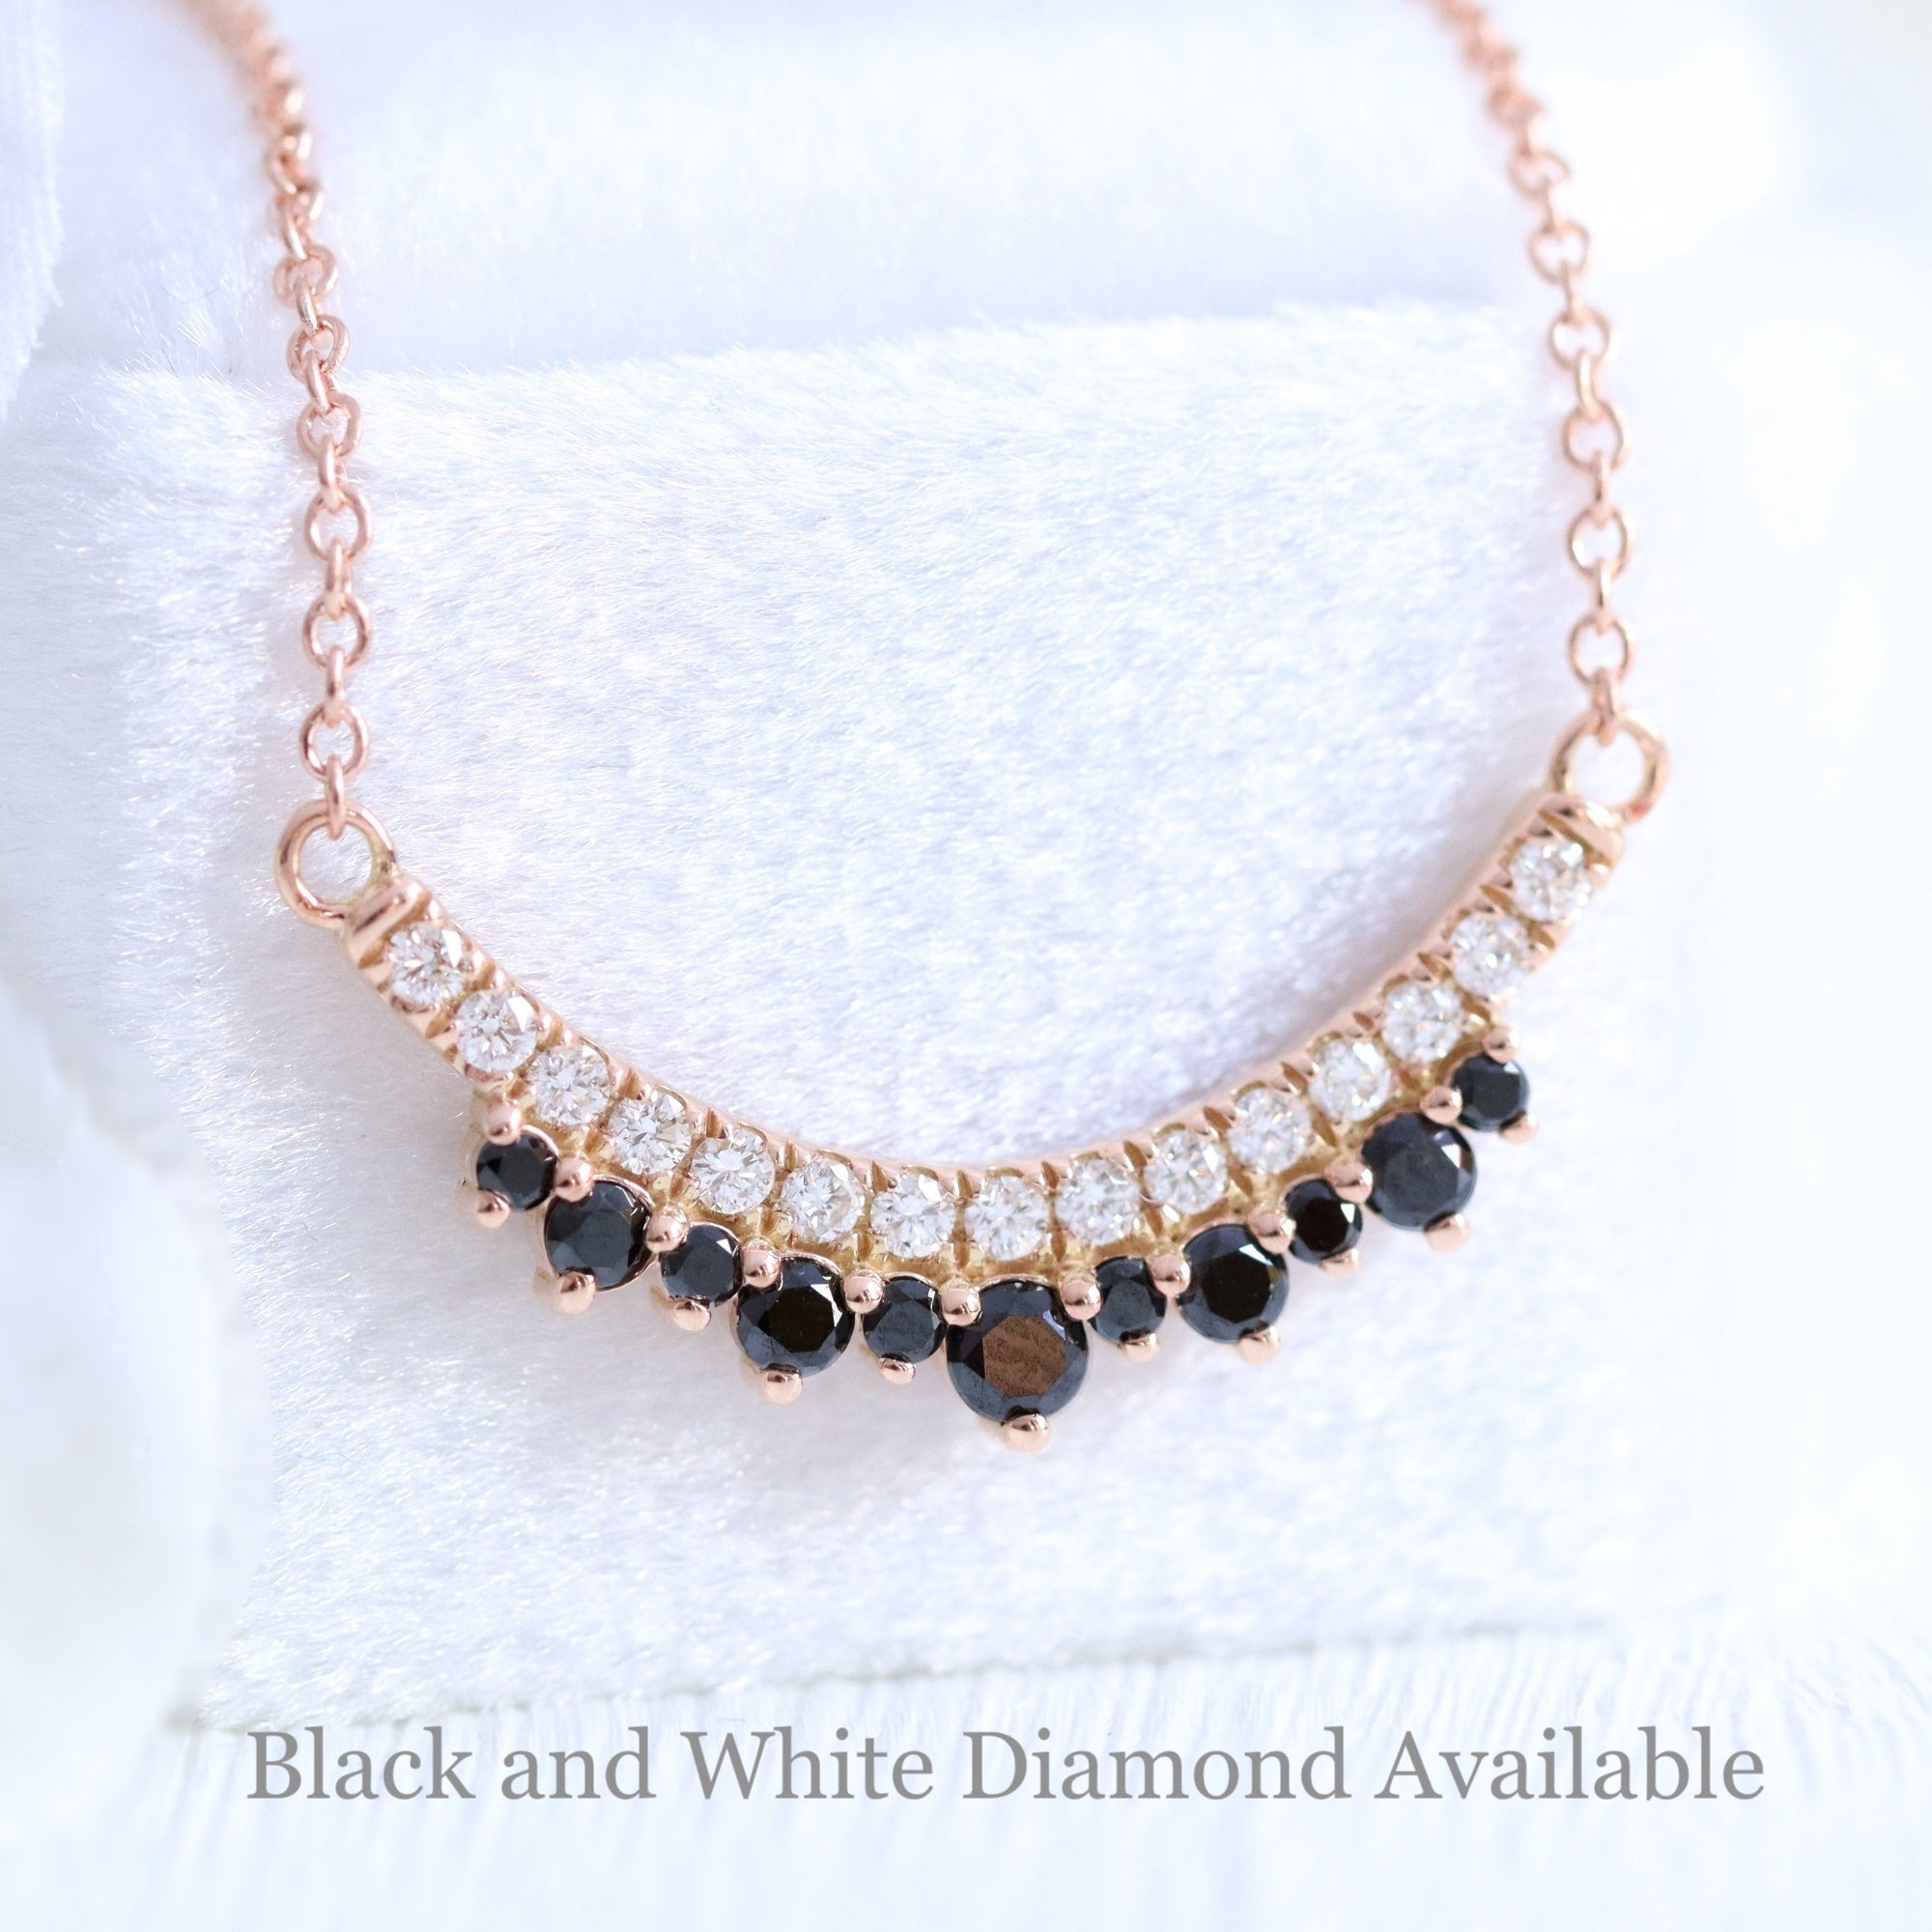 Black and white diamond pendant rose gold crown black diamond necklace la more design jewelry